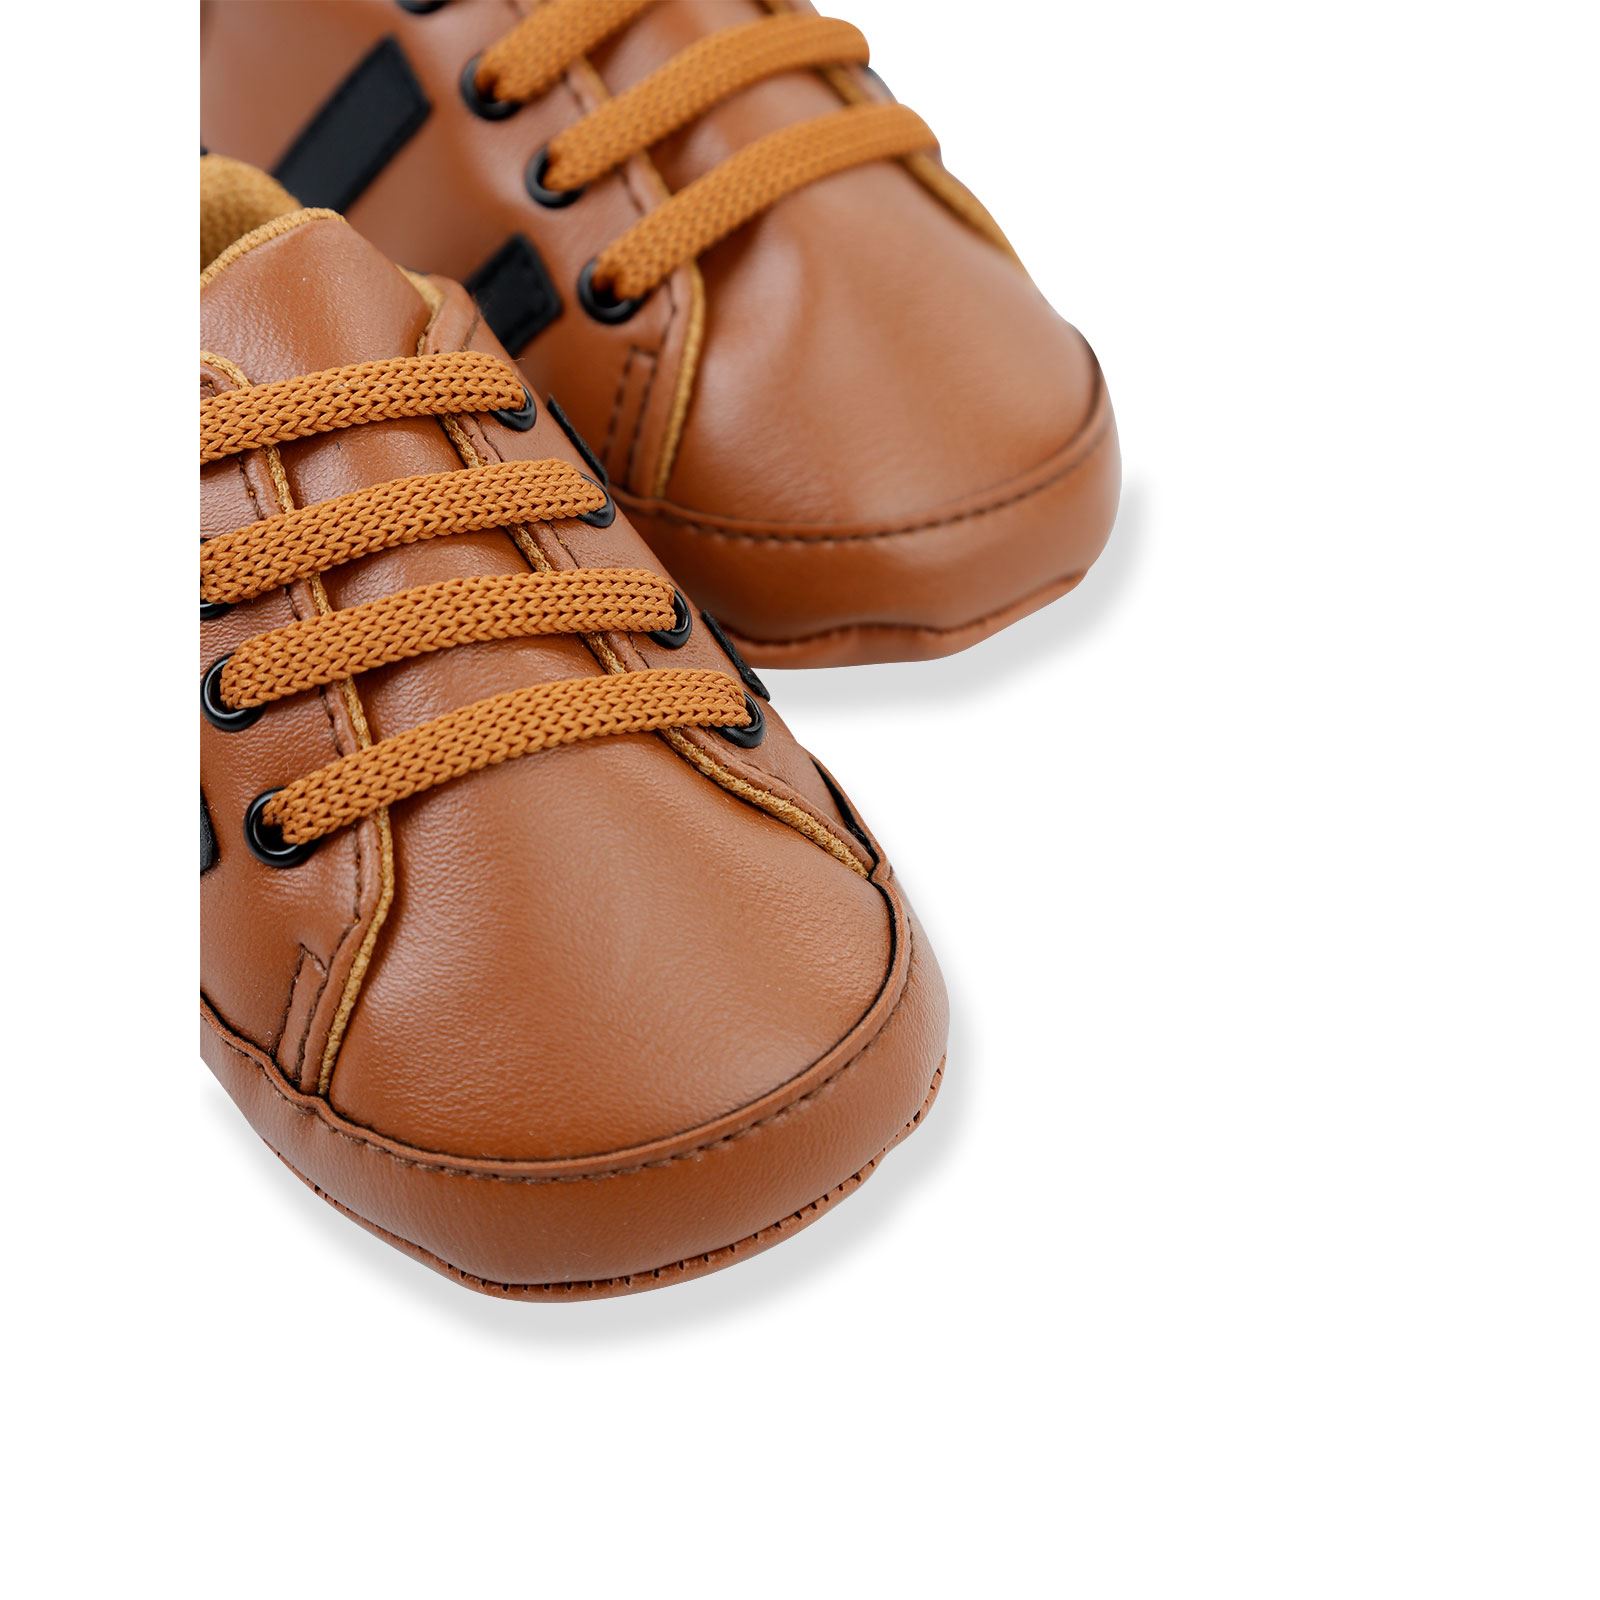 Civil Baby Erkek Bebek Patik Ayakkabı 17-19 Numara  Kahverengi